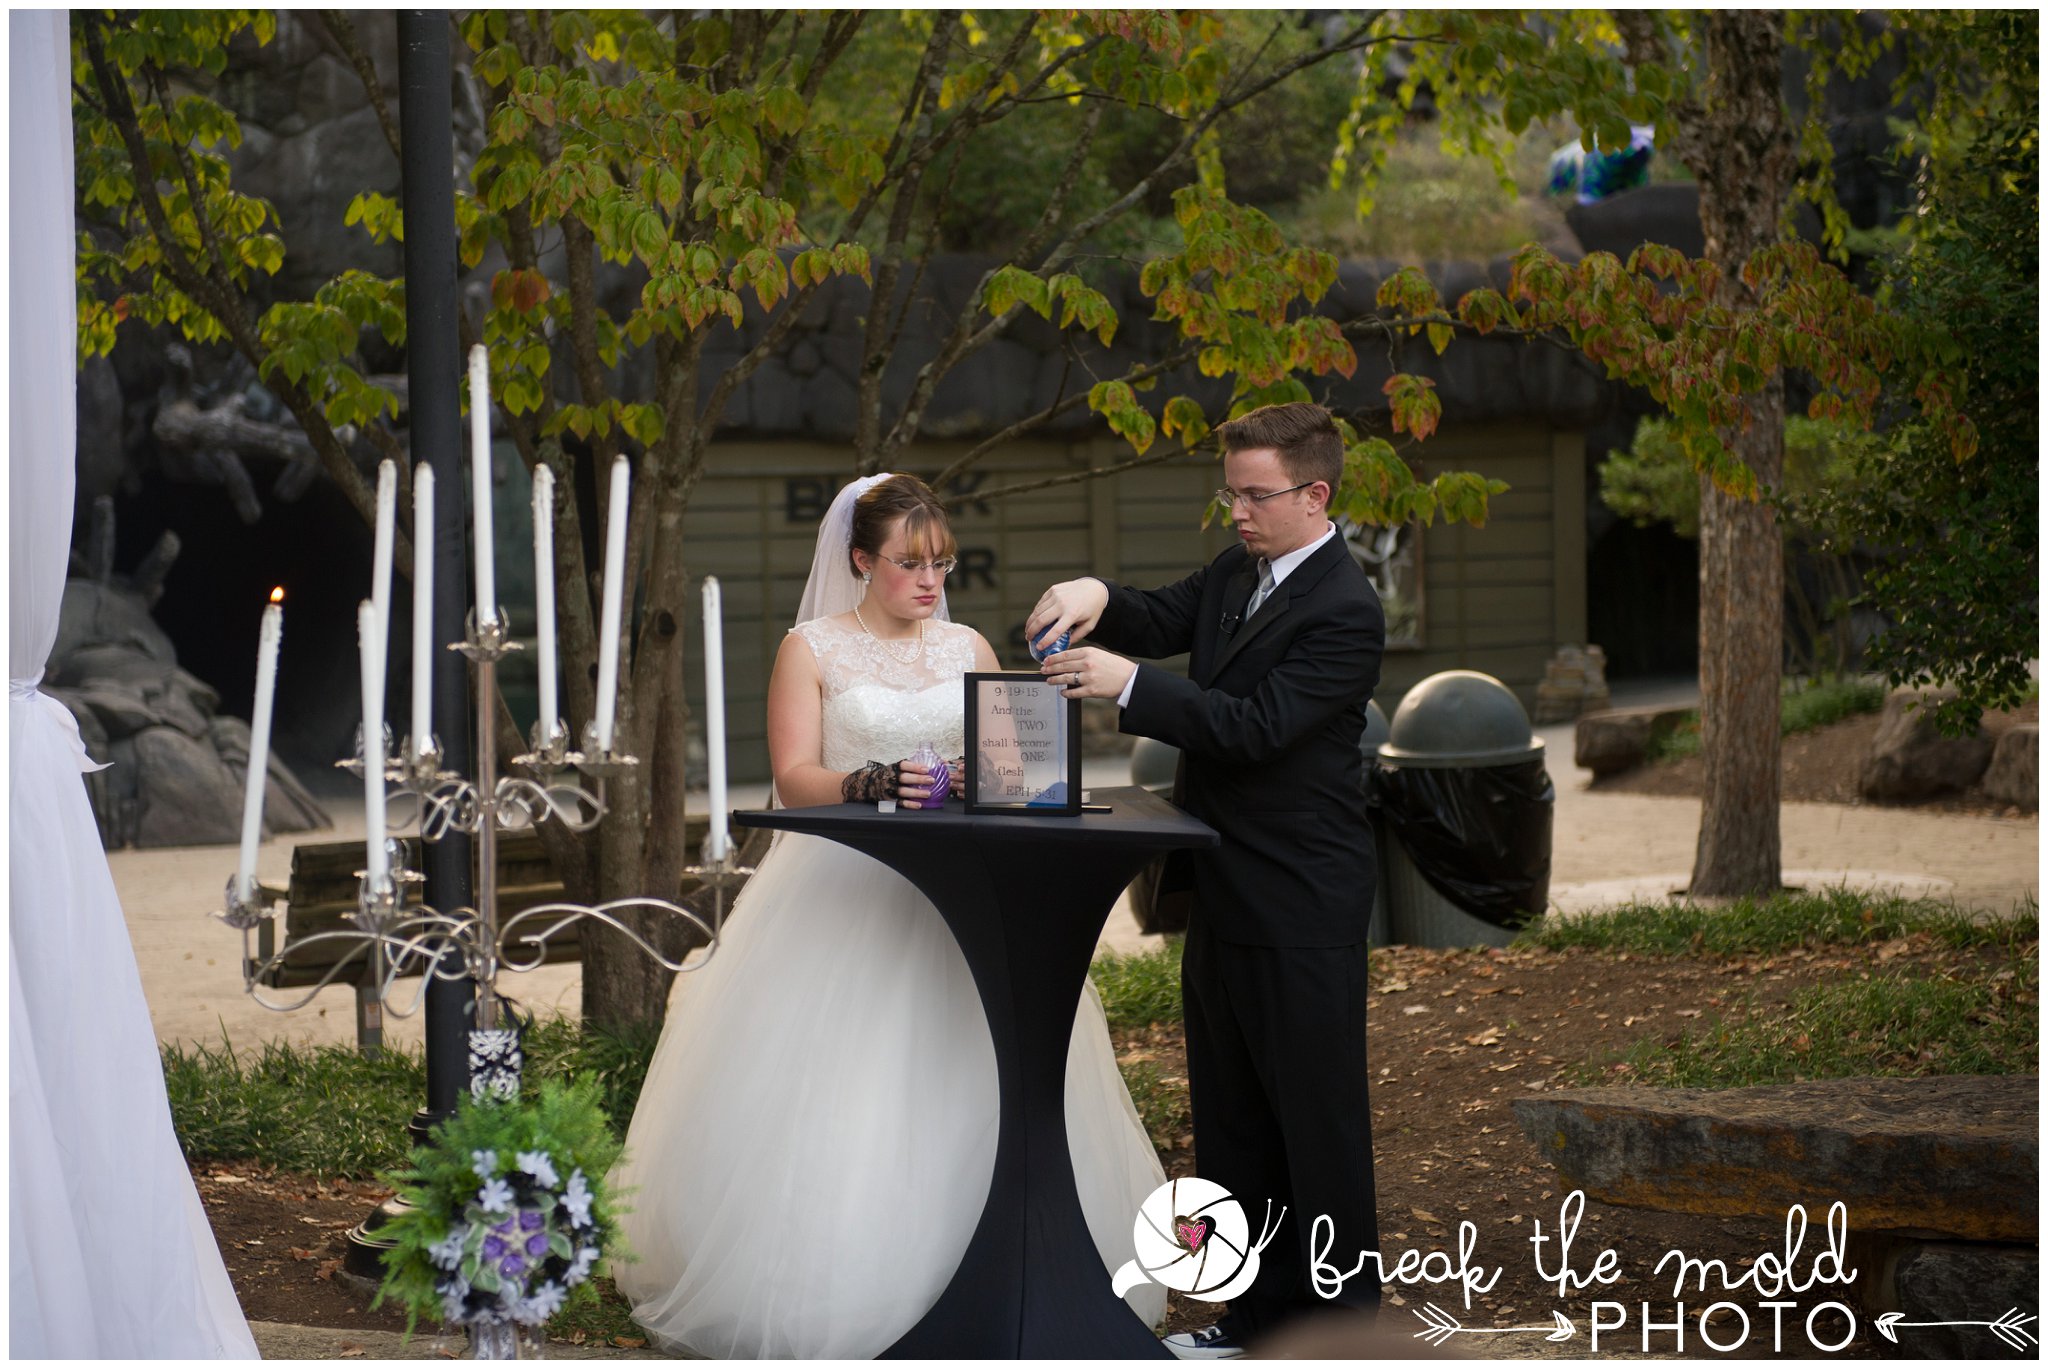 break-the-mold-photo-wedding-zoo-knoxville-tn_5959.jpg